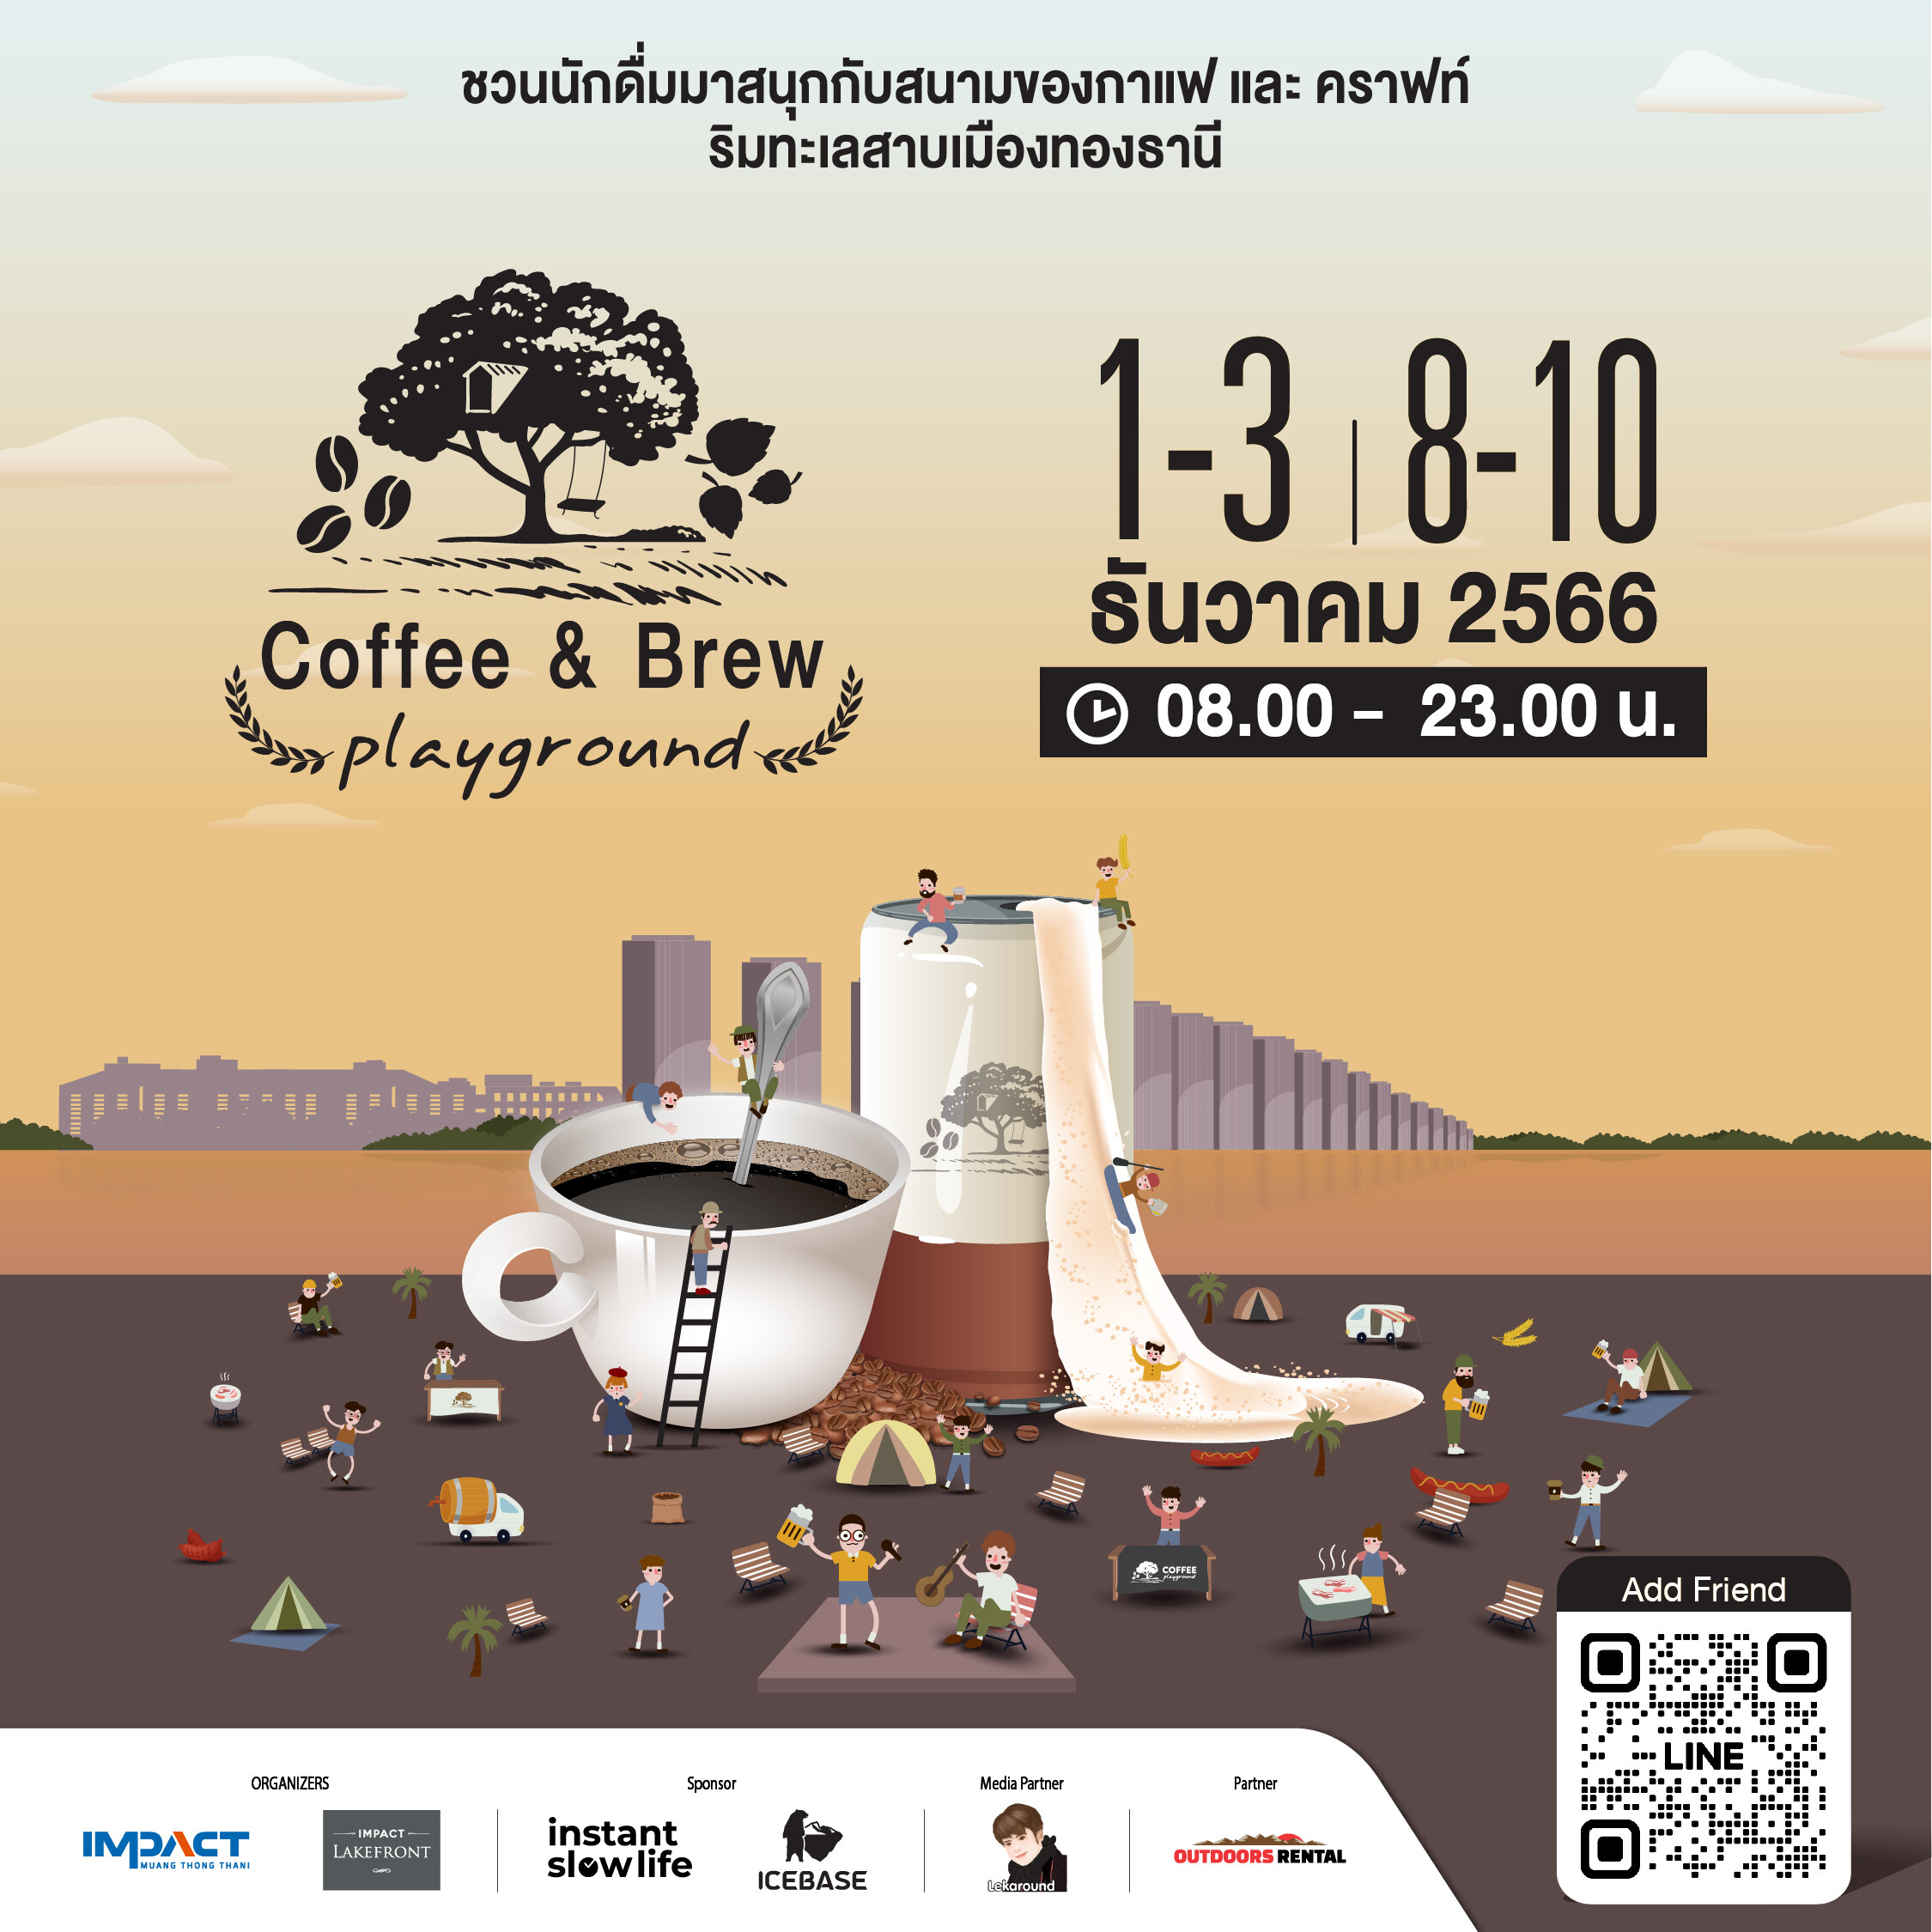 พบกับงาน "Coffee &amp; Brew Playground" ริมทะเลสาบเมืองทองธานี